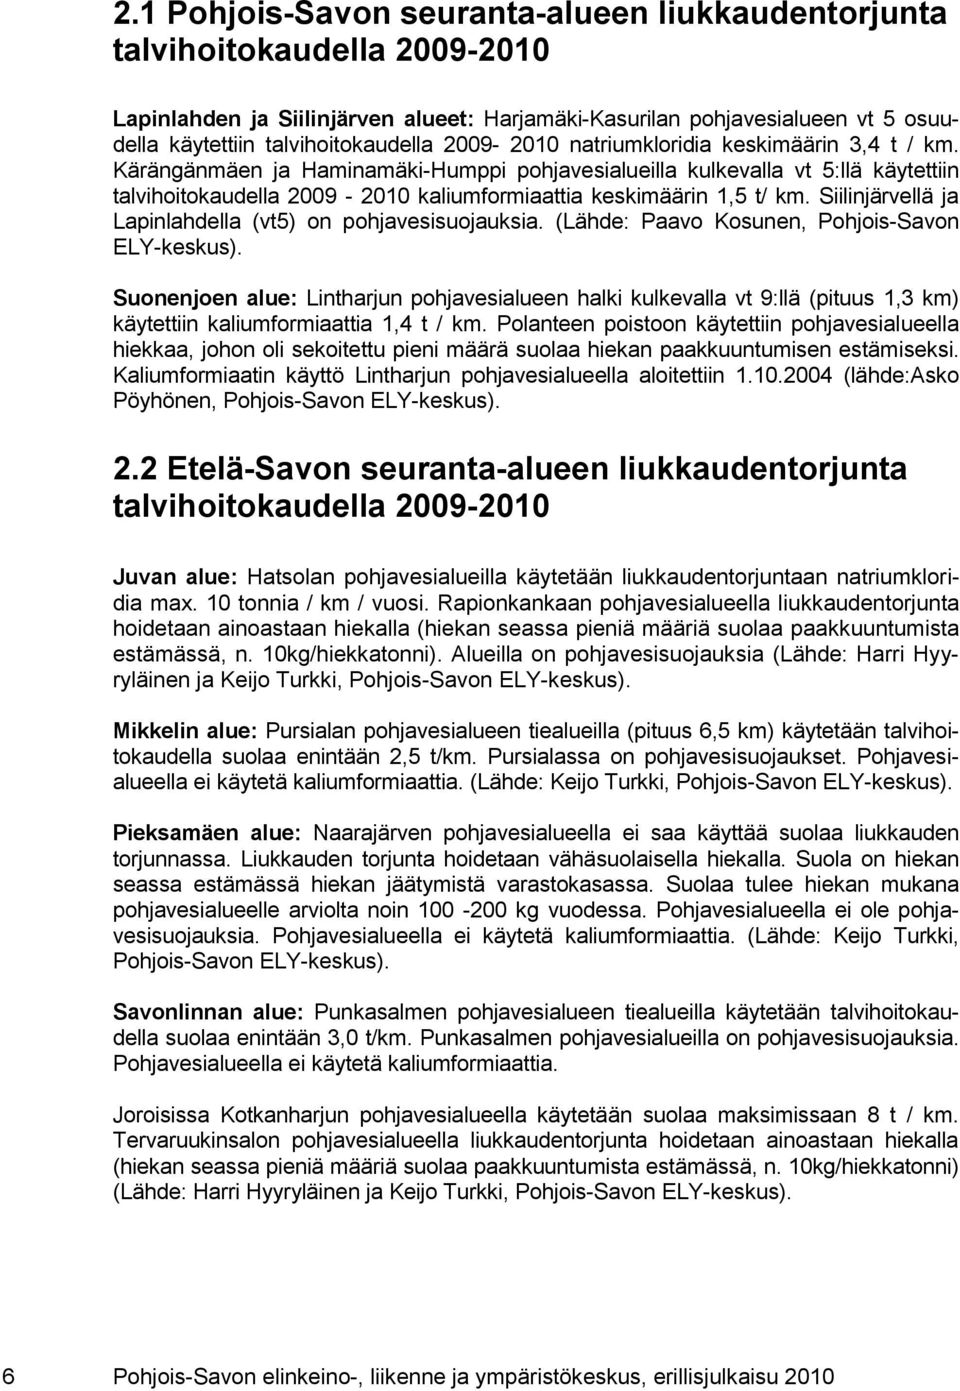 Kärängänmäen ja Haminamäki-Humppi pohjavesialueilla kulkevalla vt 5:llä käytettiin talvihoitokaudella 2009-2010 kaliumformiaattia keskimäärin 1,5 t/ km.